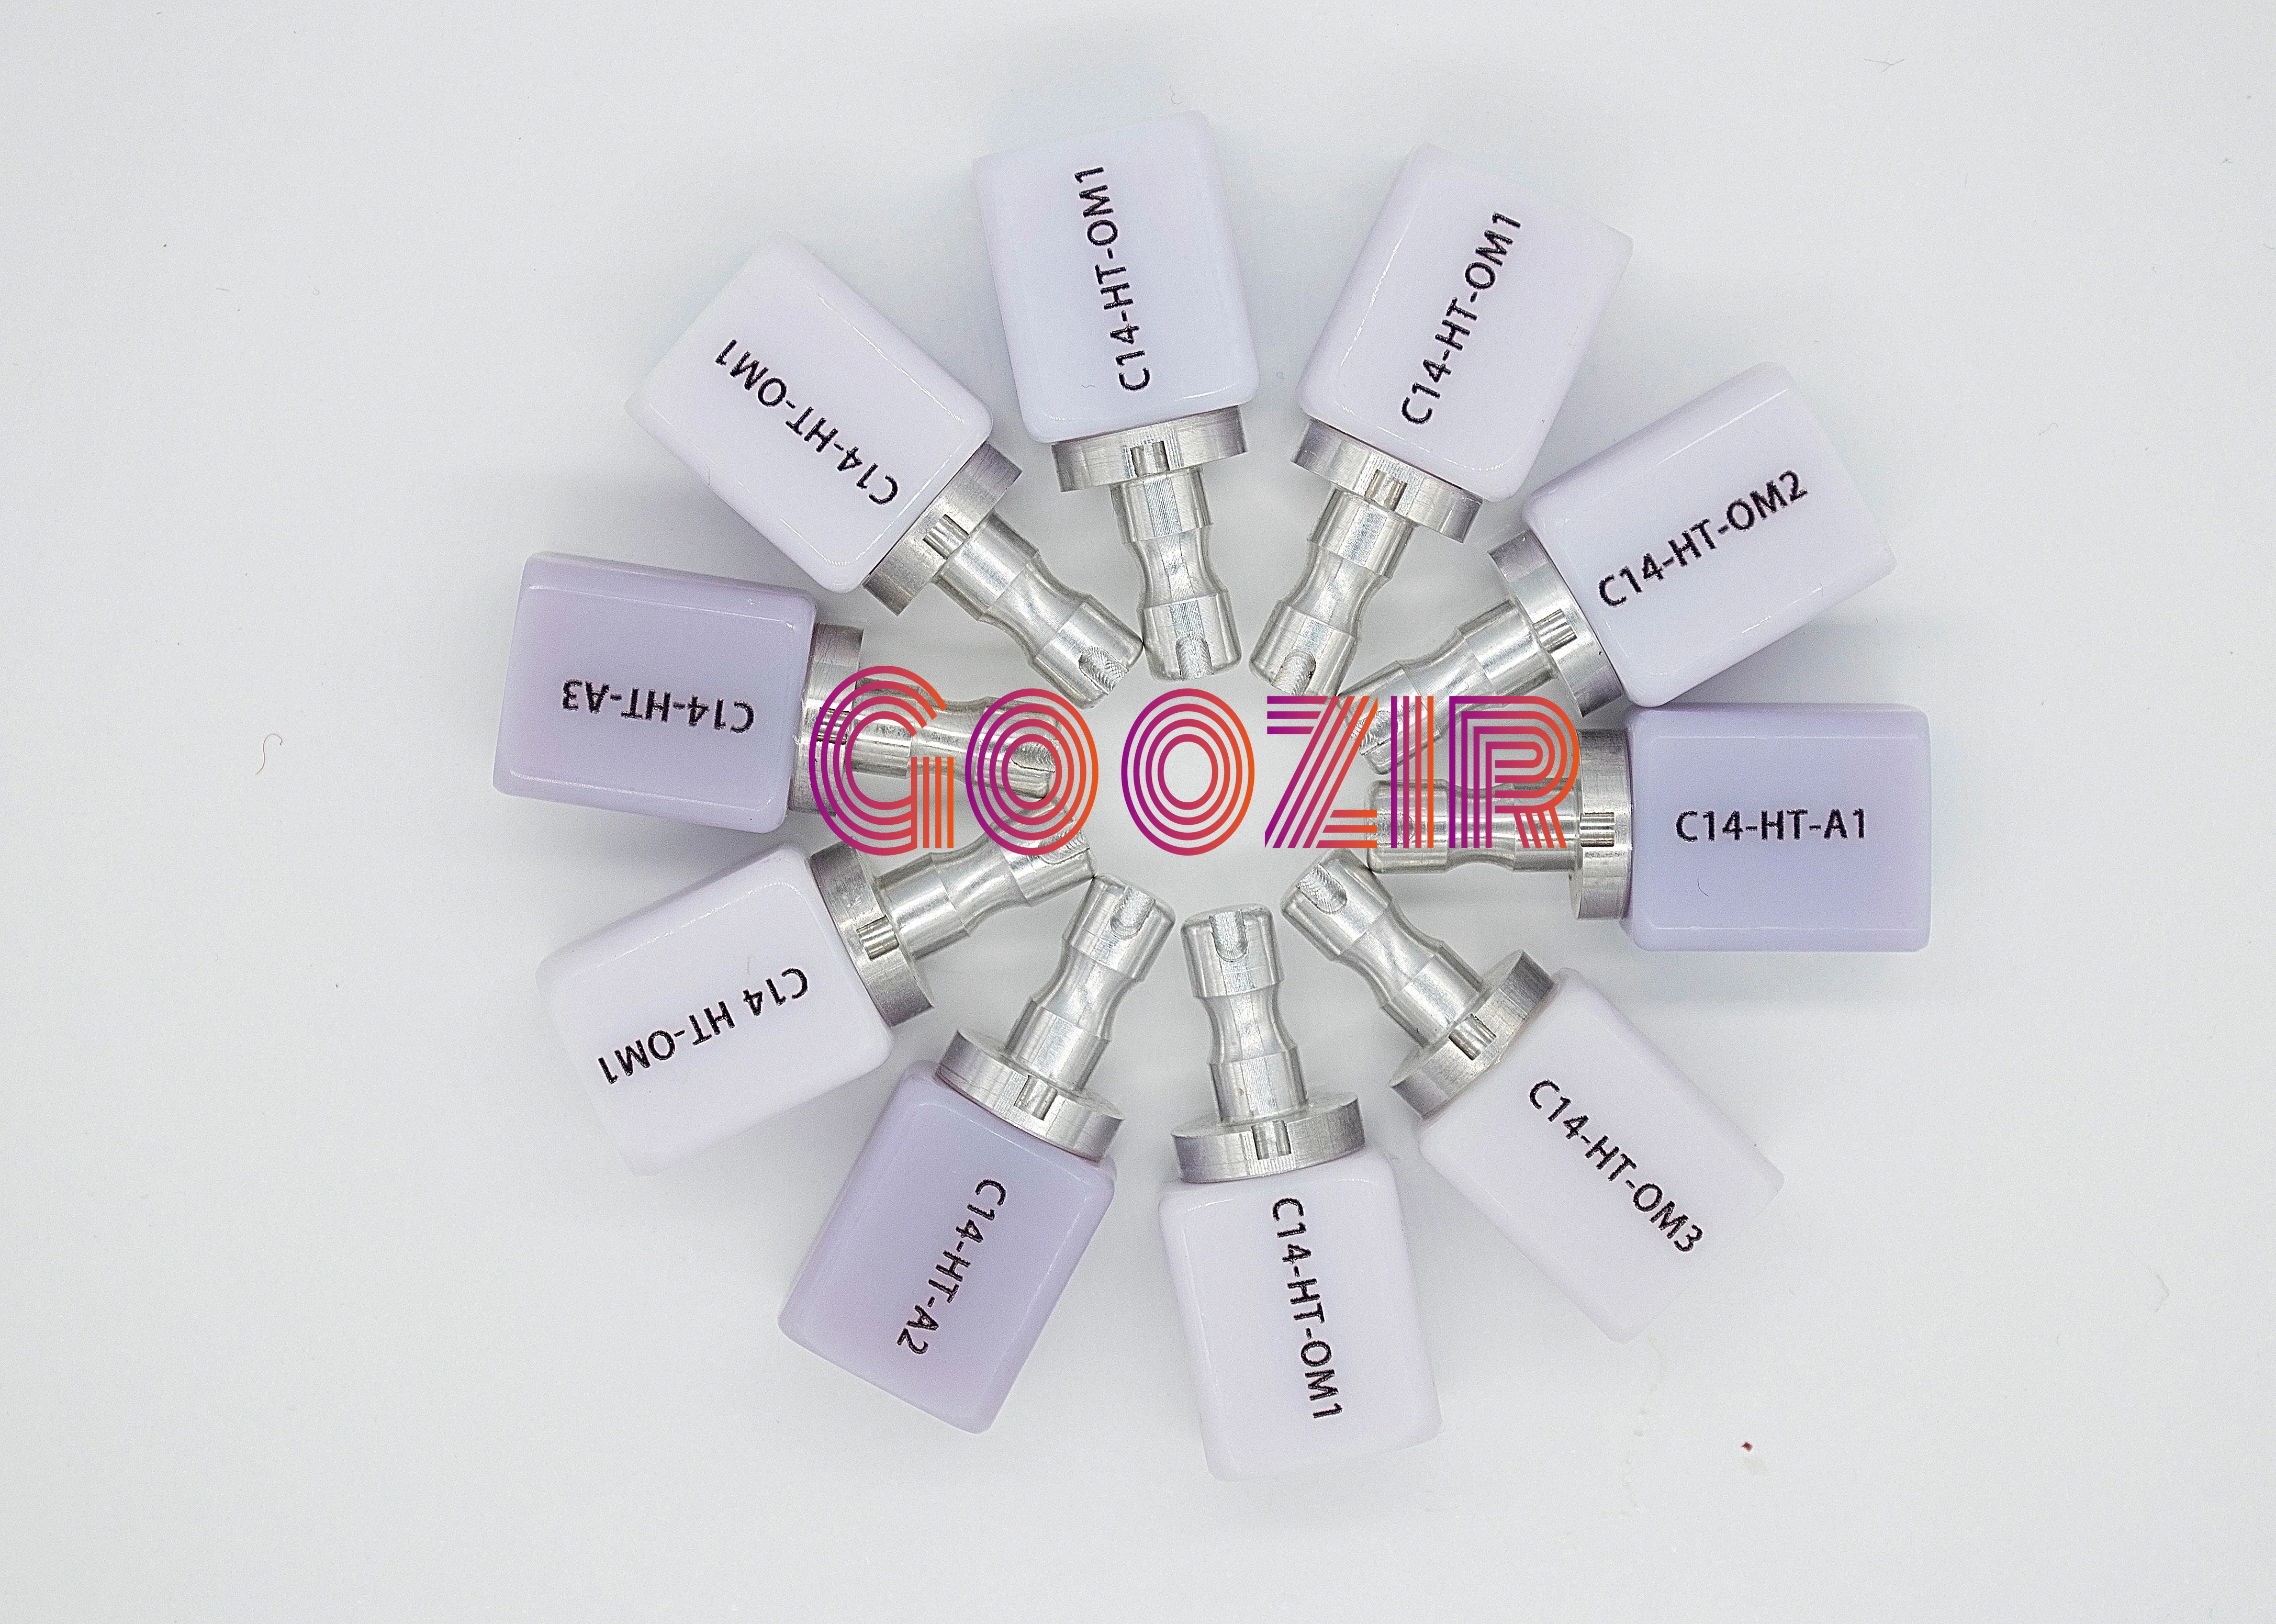 goozir-cerec-lithium-disilicate-blocks-c14-18-15-13mm-5-pieces-for-dental-cad-cam